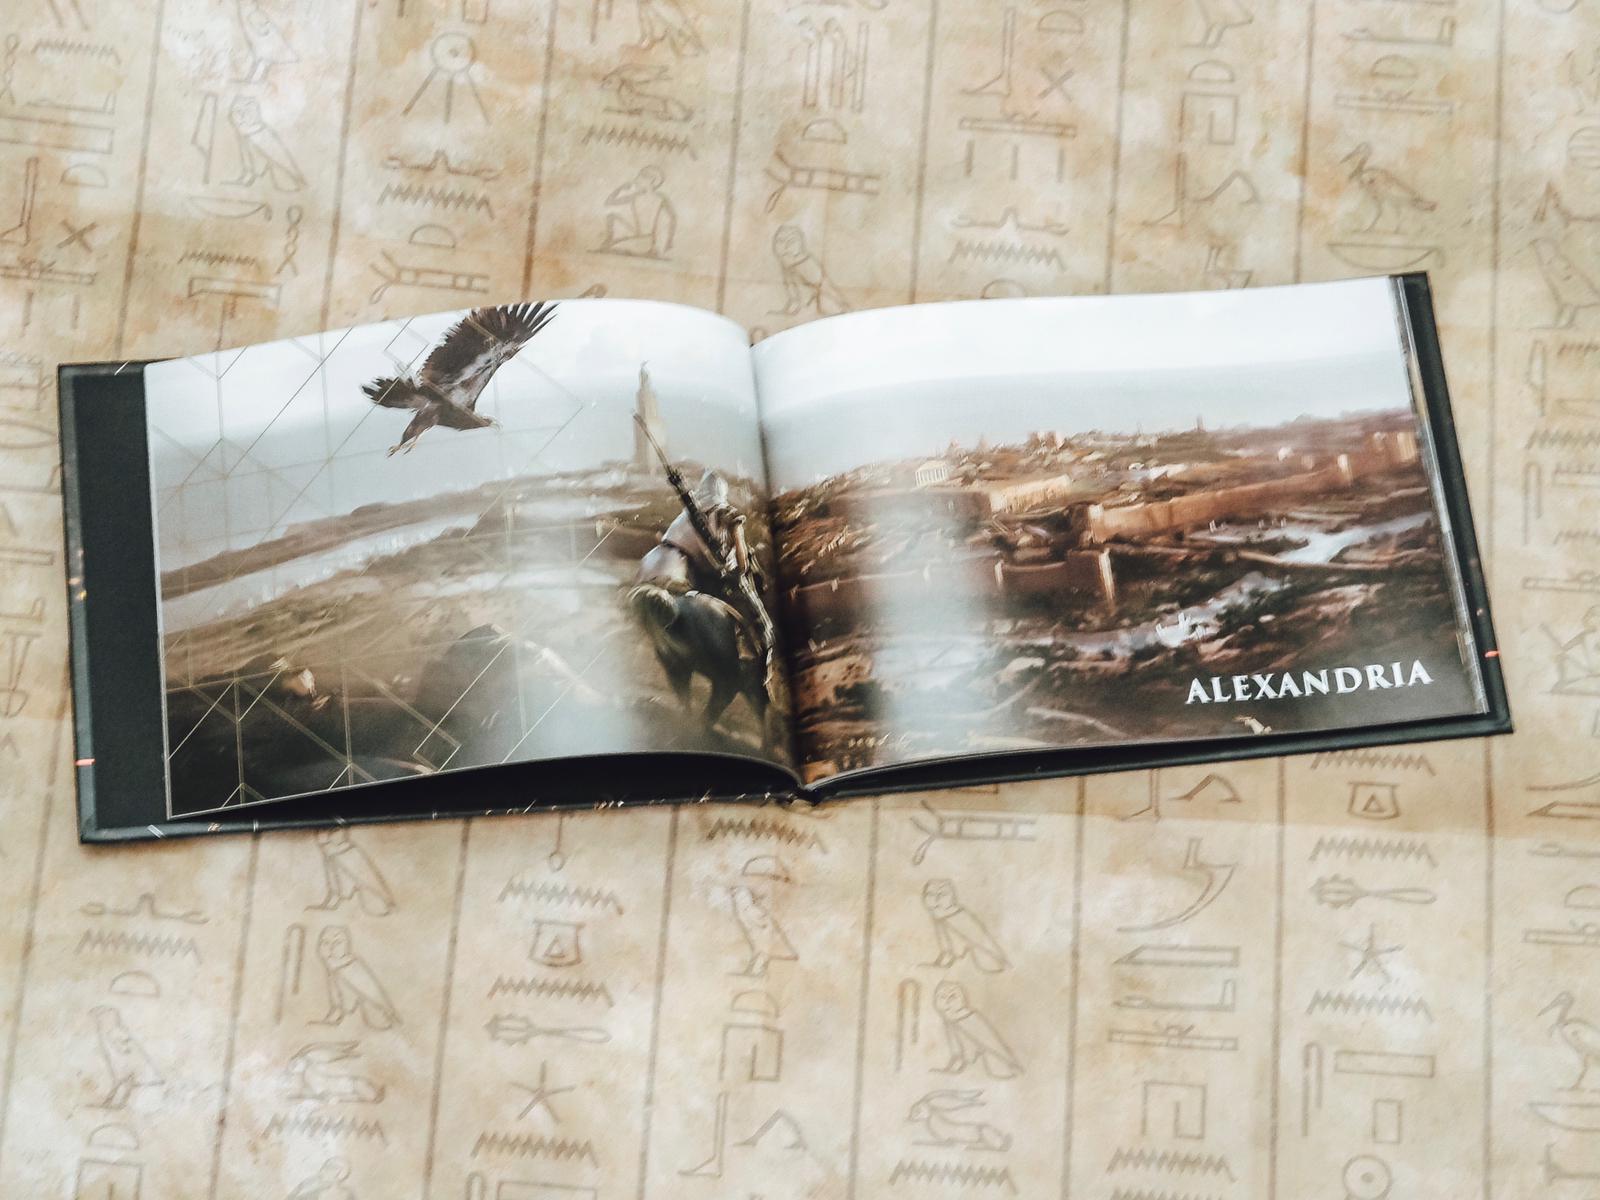 Die Assasins Creed - Dawn of the Creed Collector’s Edition war exklusiv im Ubisoft Store erhältlich & erschien am 27.10.201. Mehr dazu auf dem Gamer Blog ☆